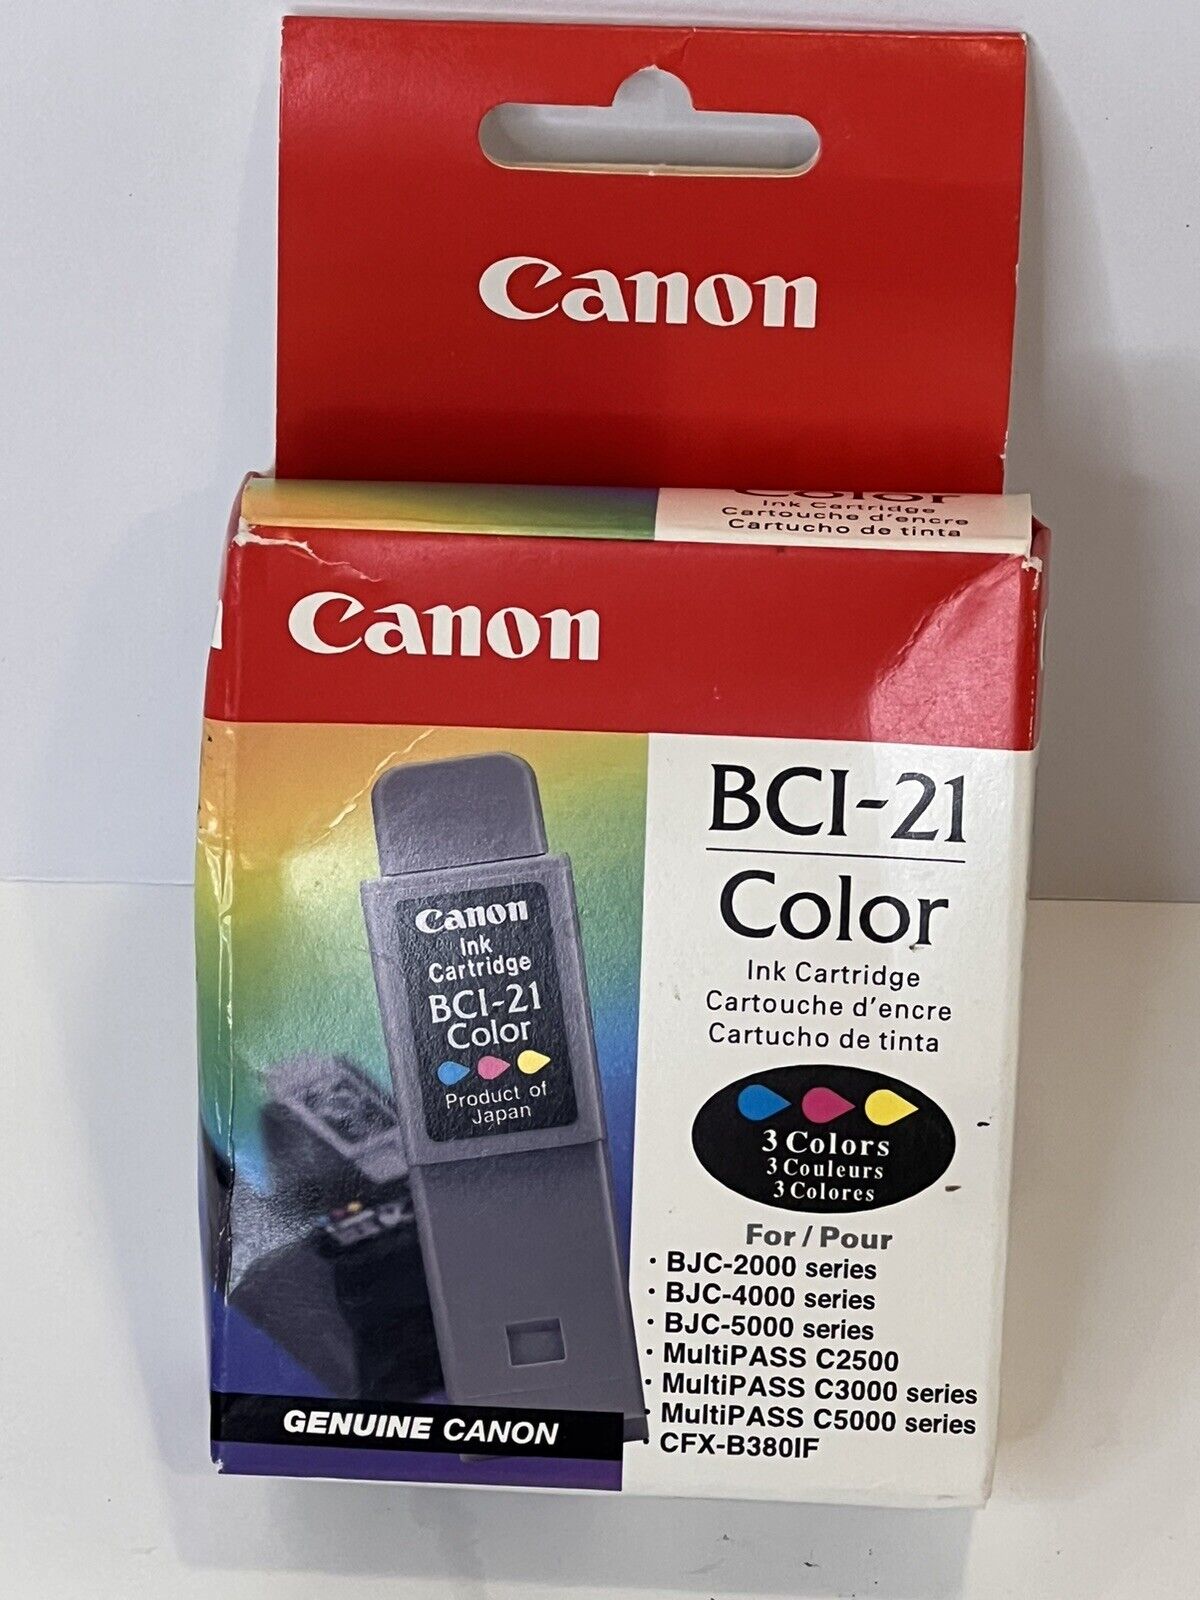 CANON BCI-21 Color Printer Cartridge New In Box